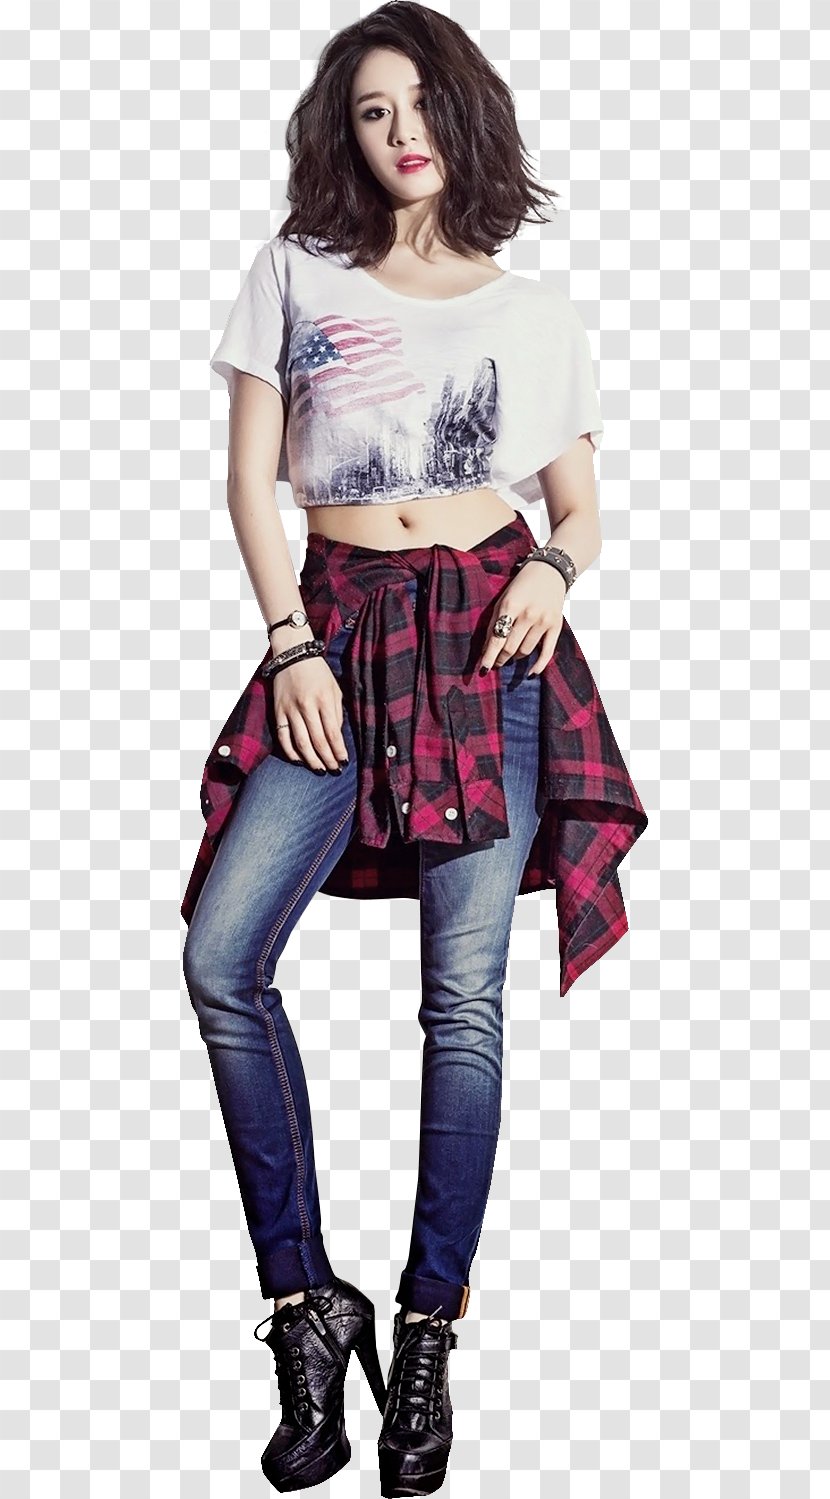 Park Ji-yeon T-ara K-pop Dancer Artist - T Shirt Transparent PNG